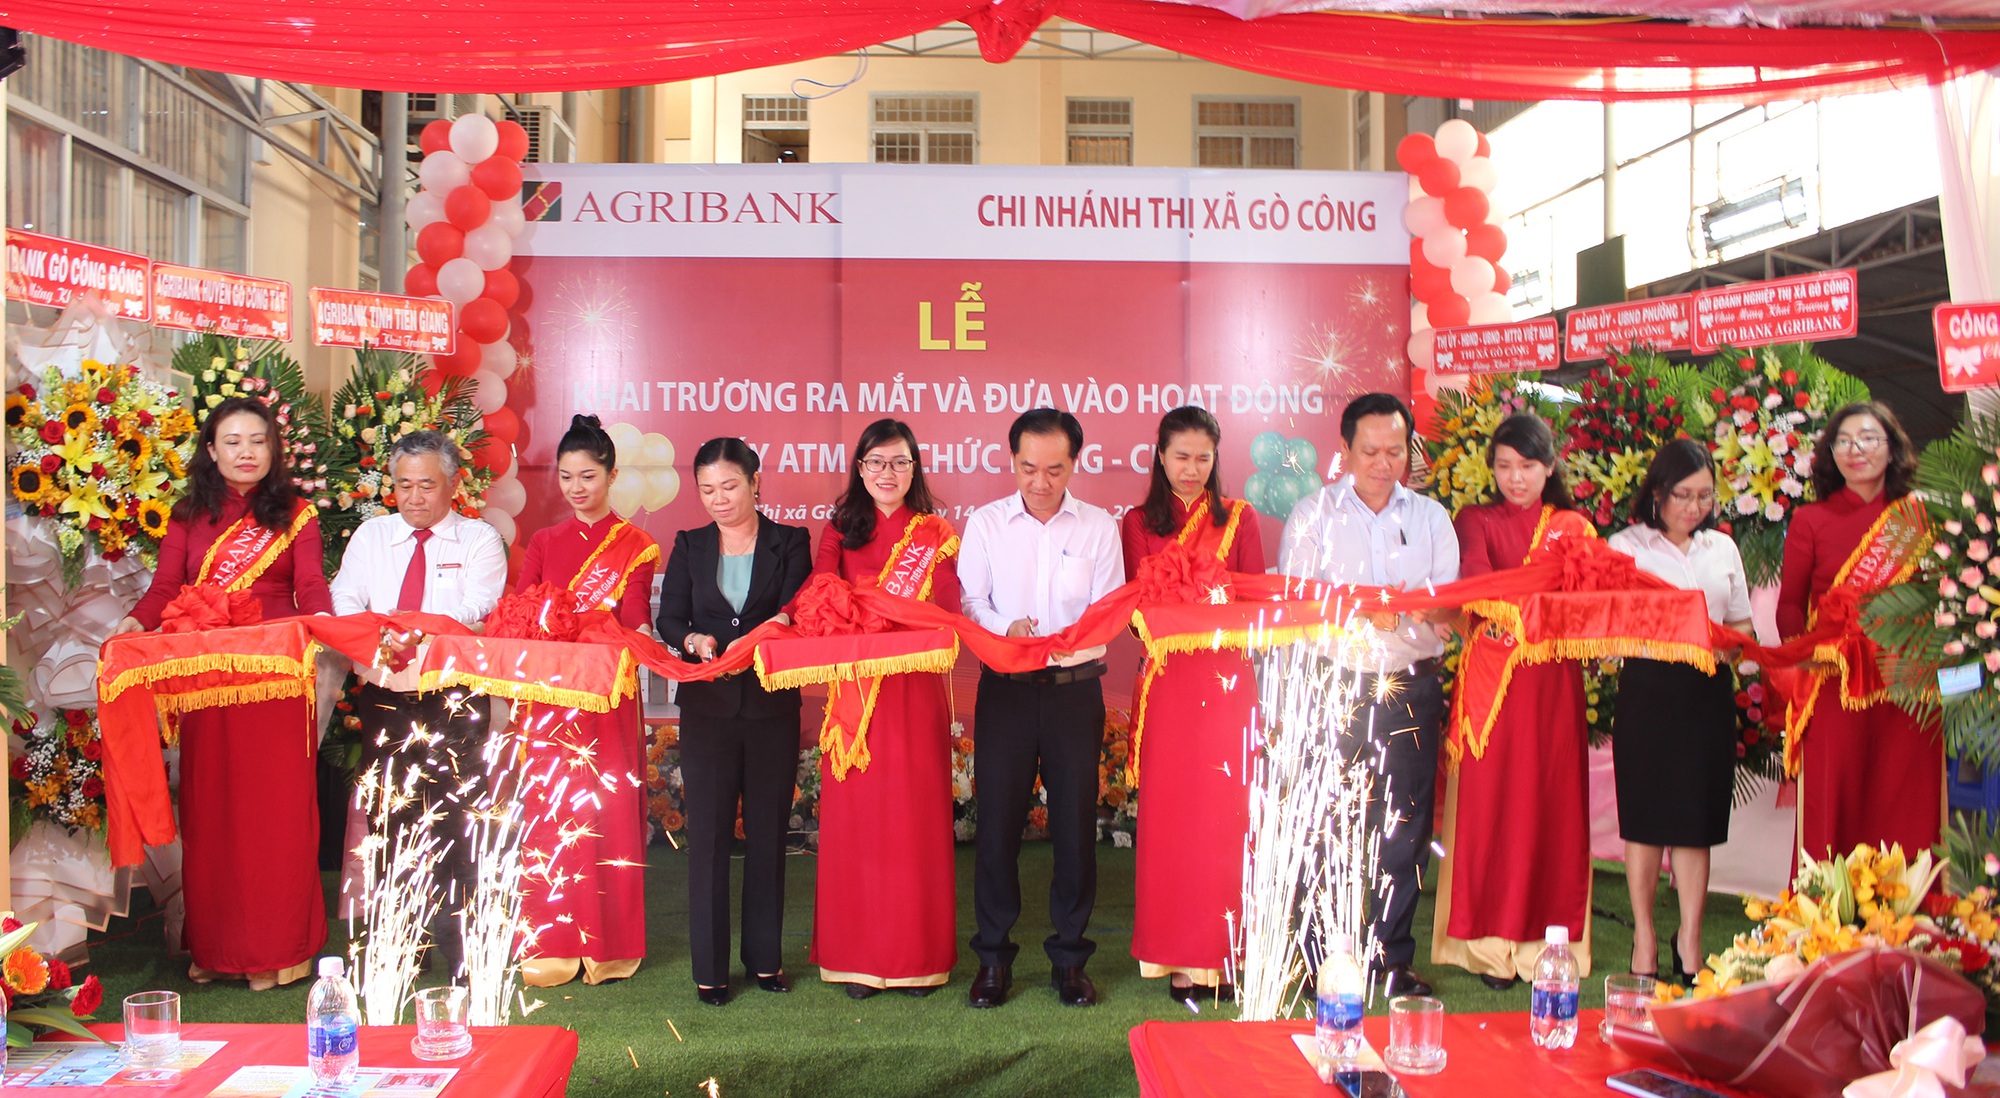 Agribank Tiền Giang đưa vào hoạt động CDM thứ 6 tại TX Gò Công - Ảnh 1.